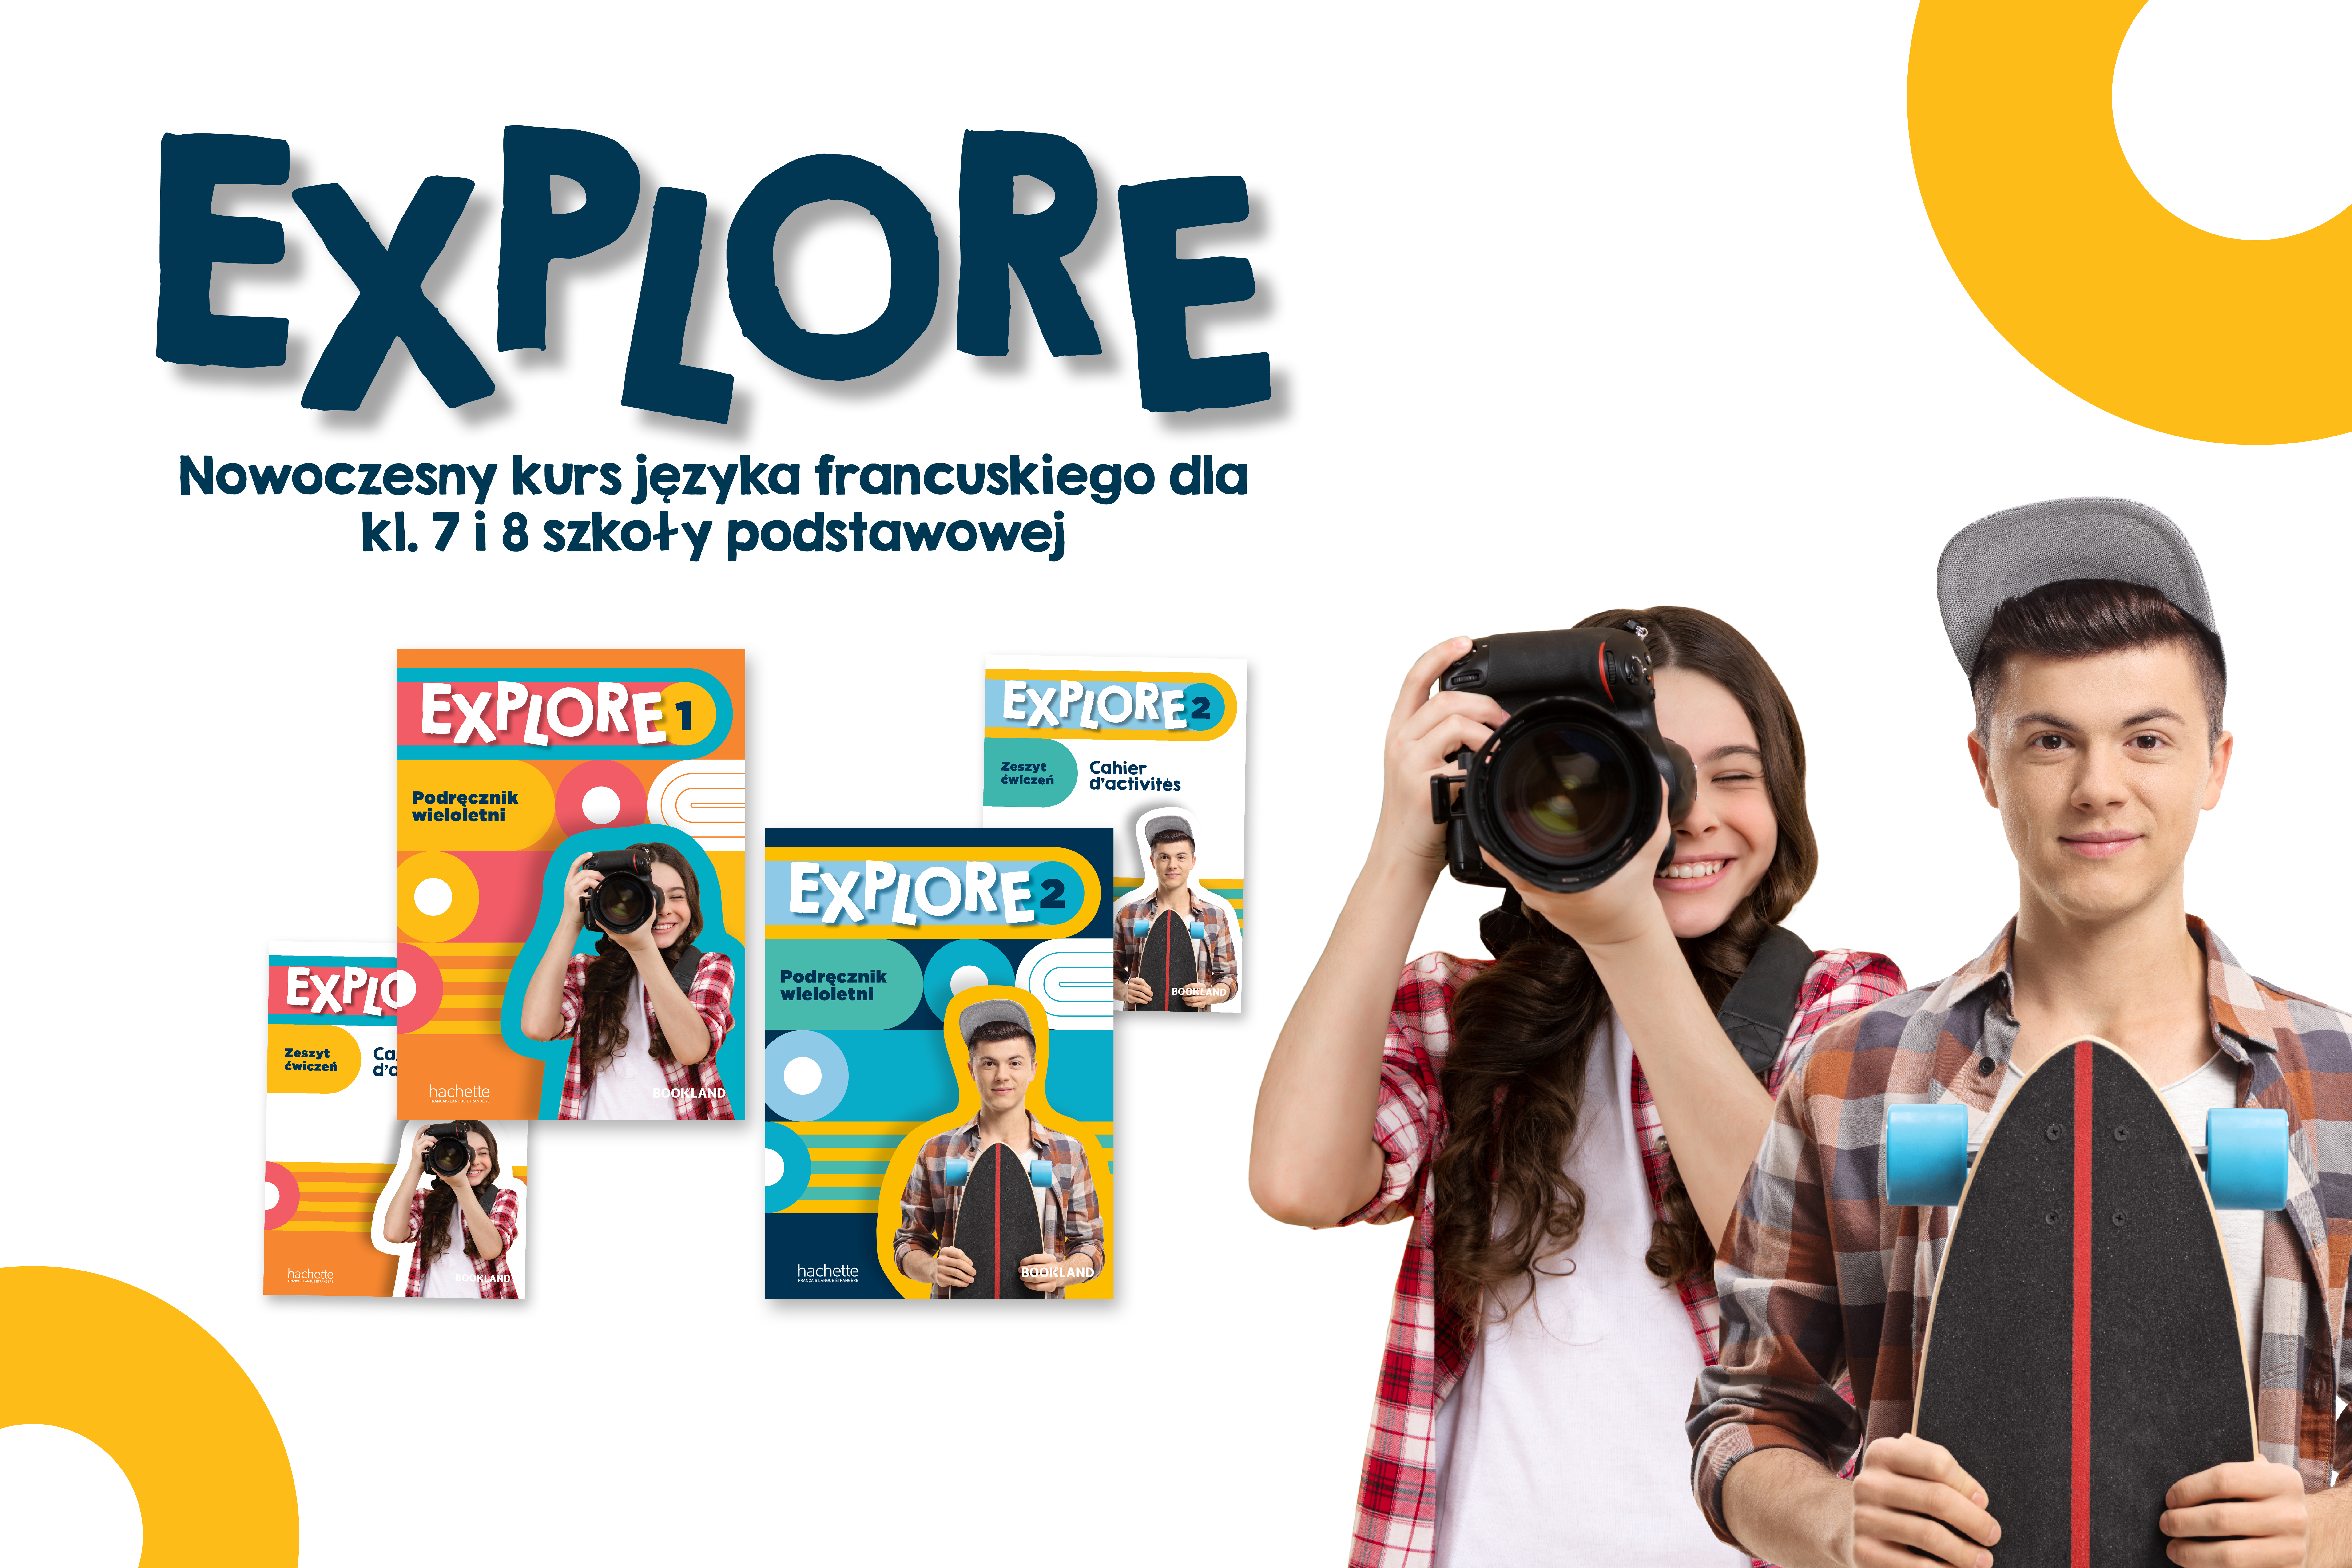 Explore 2 – nowy podręcznik do klasy 8 szkoły podstawowej